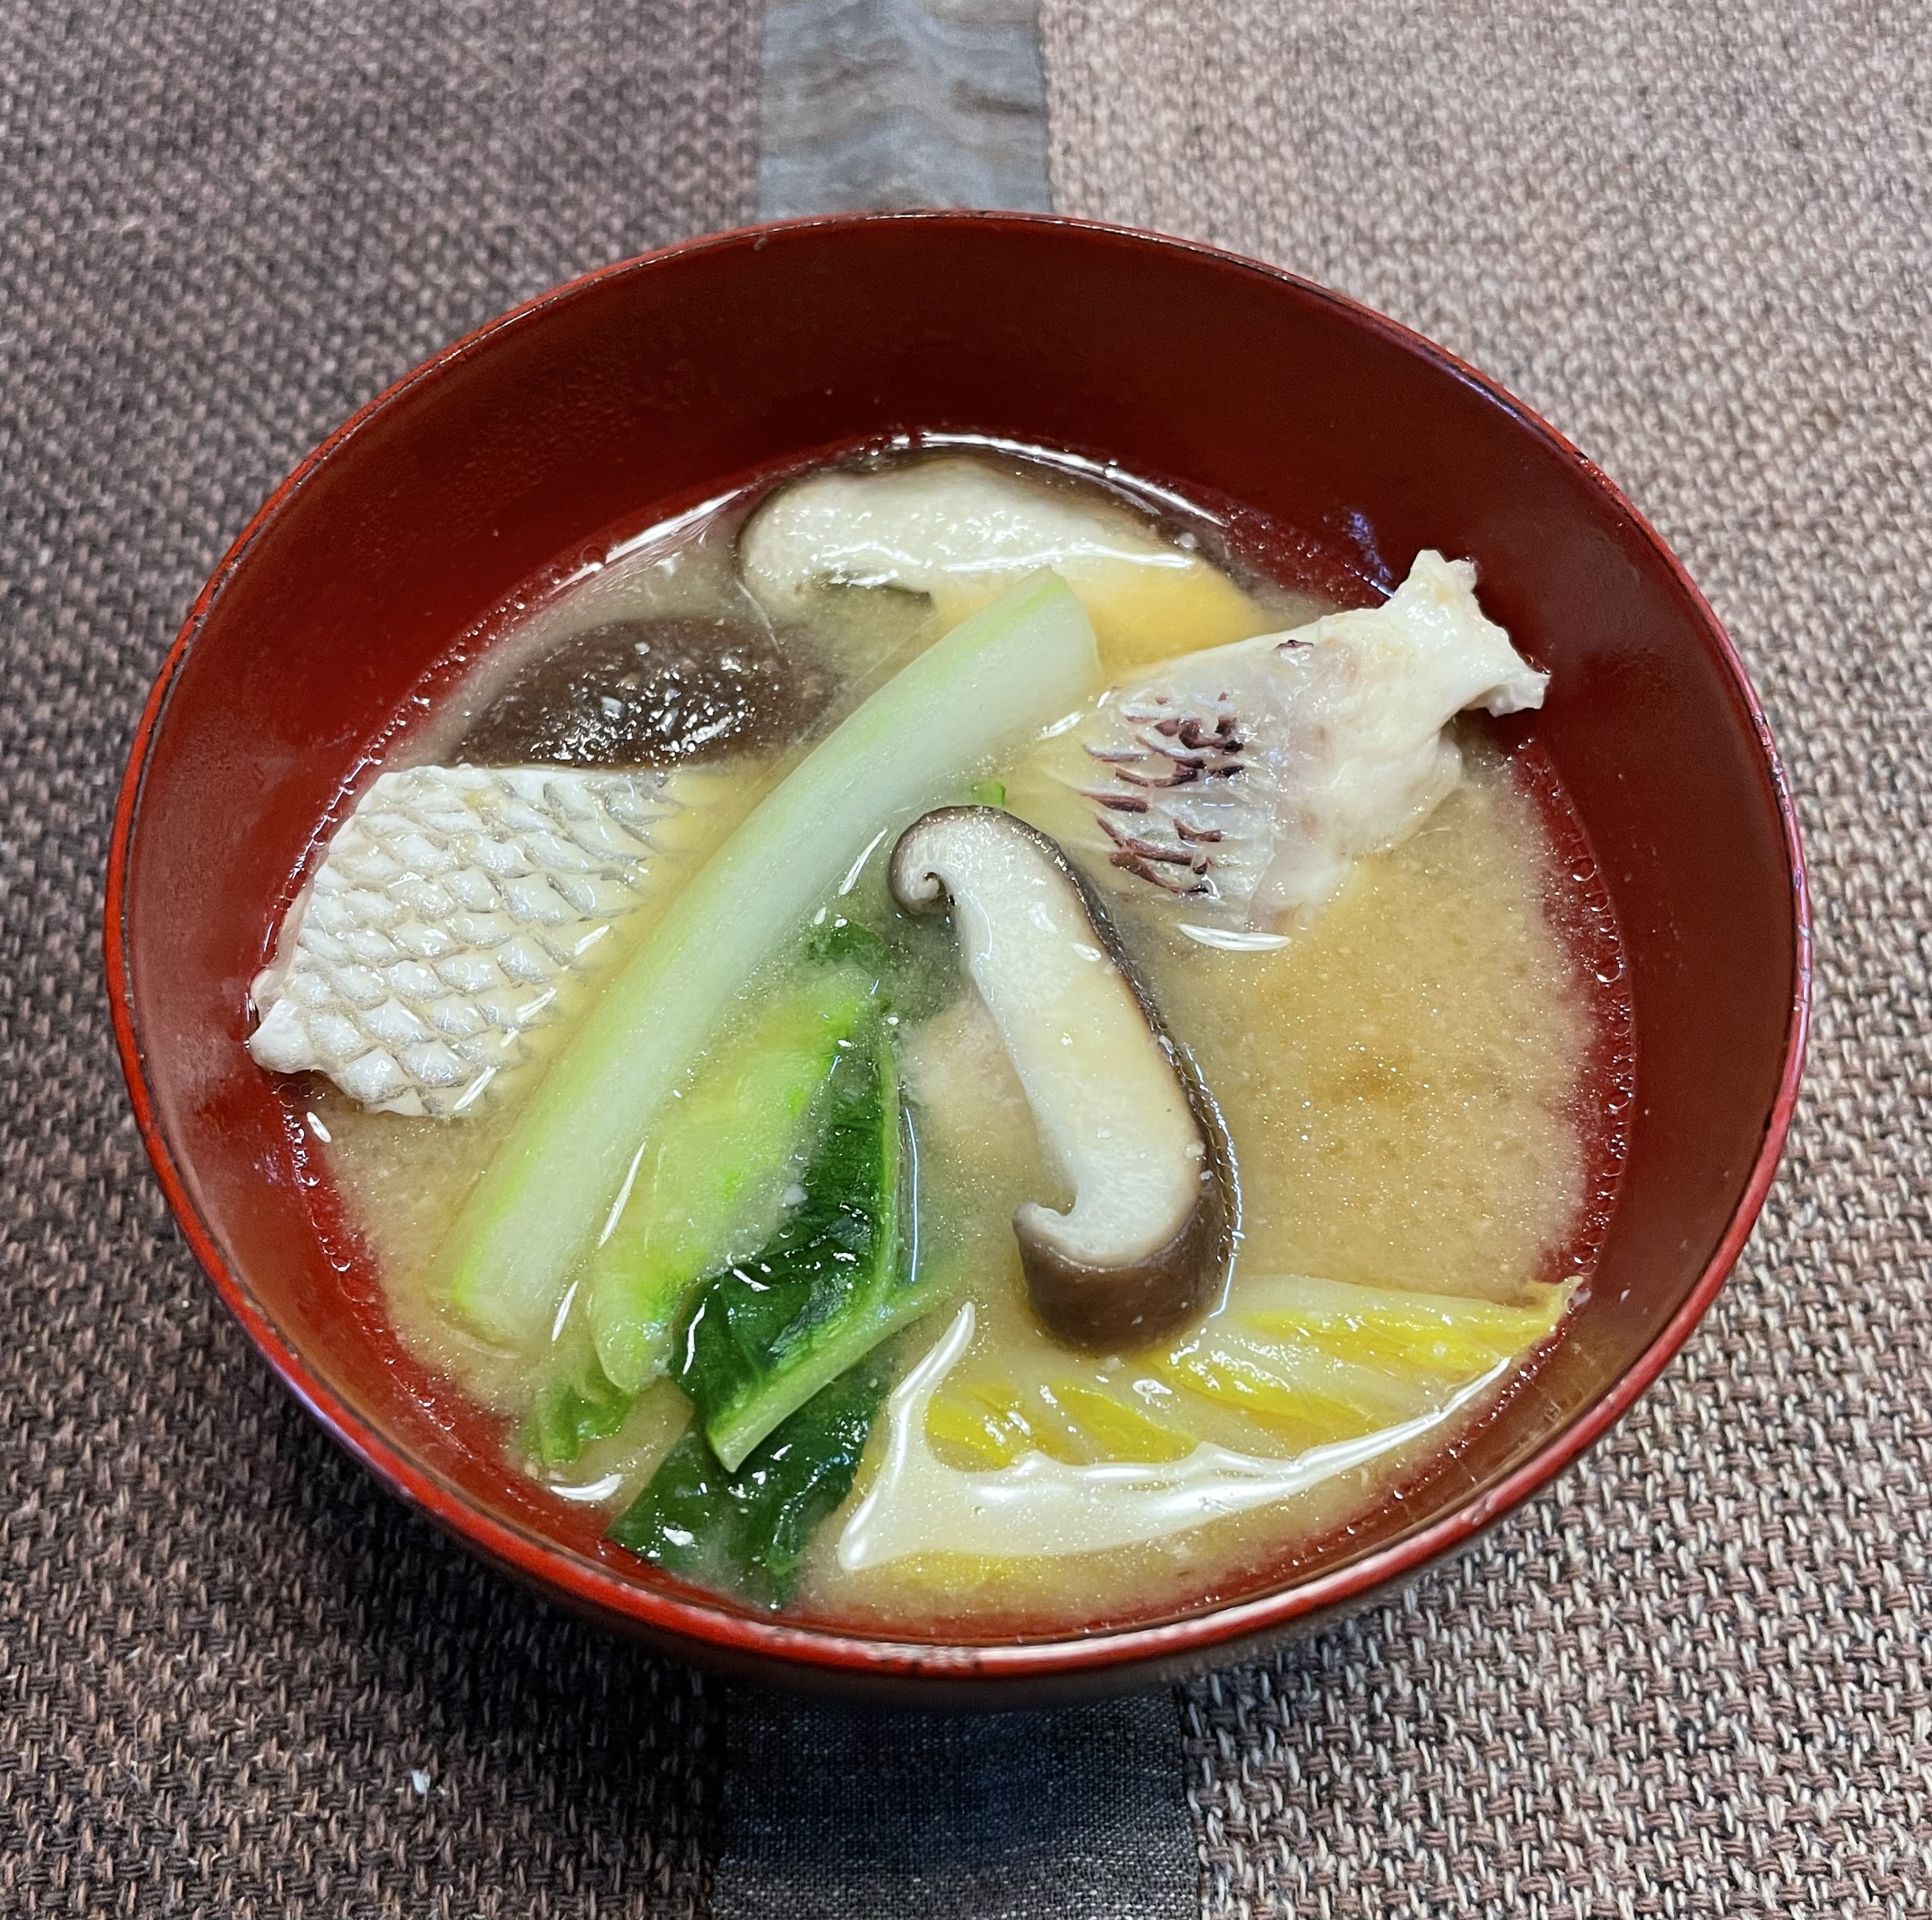 タラと白菜の味噌汁 福岡県柳川で創業140年余 明治から変わらない味噌作りの鶴味噌醸造